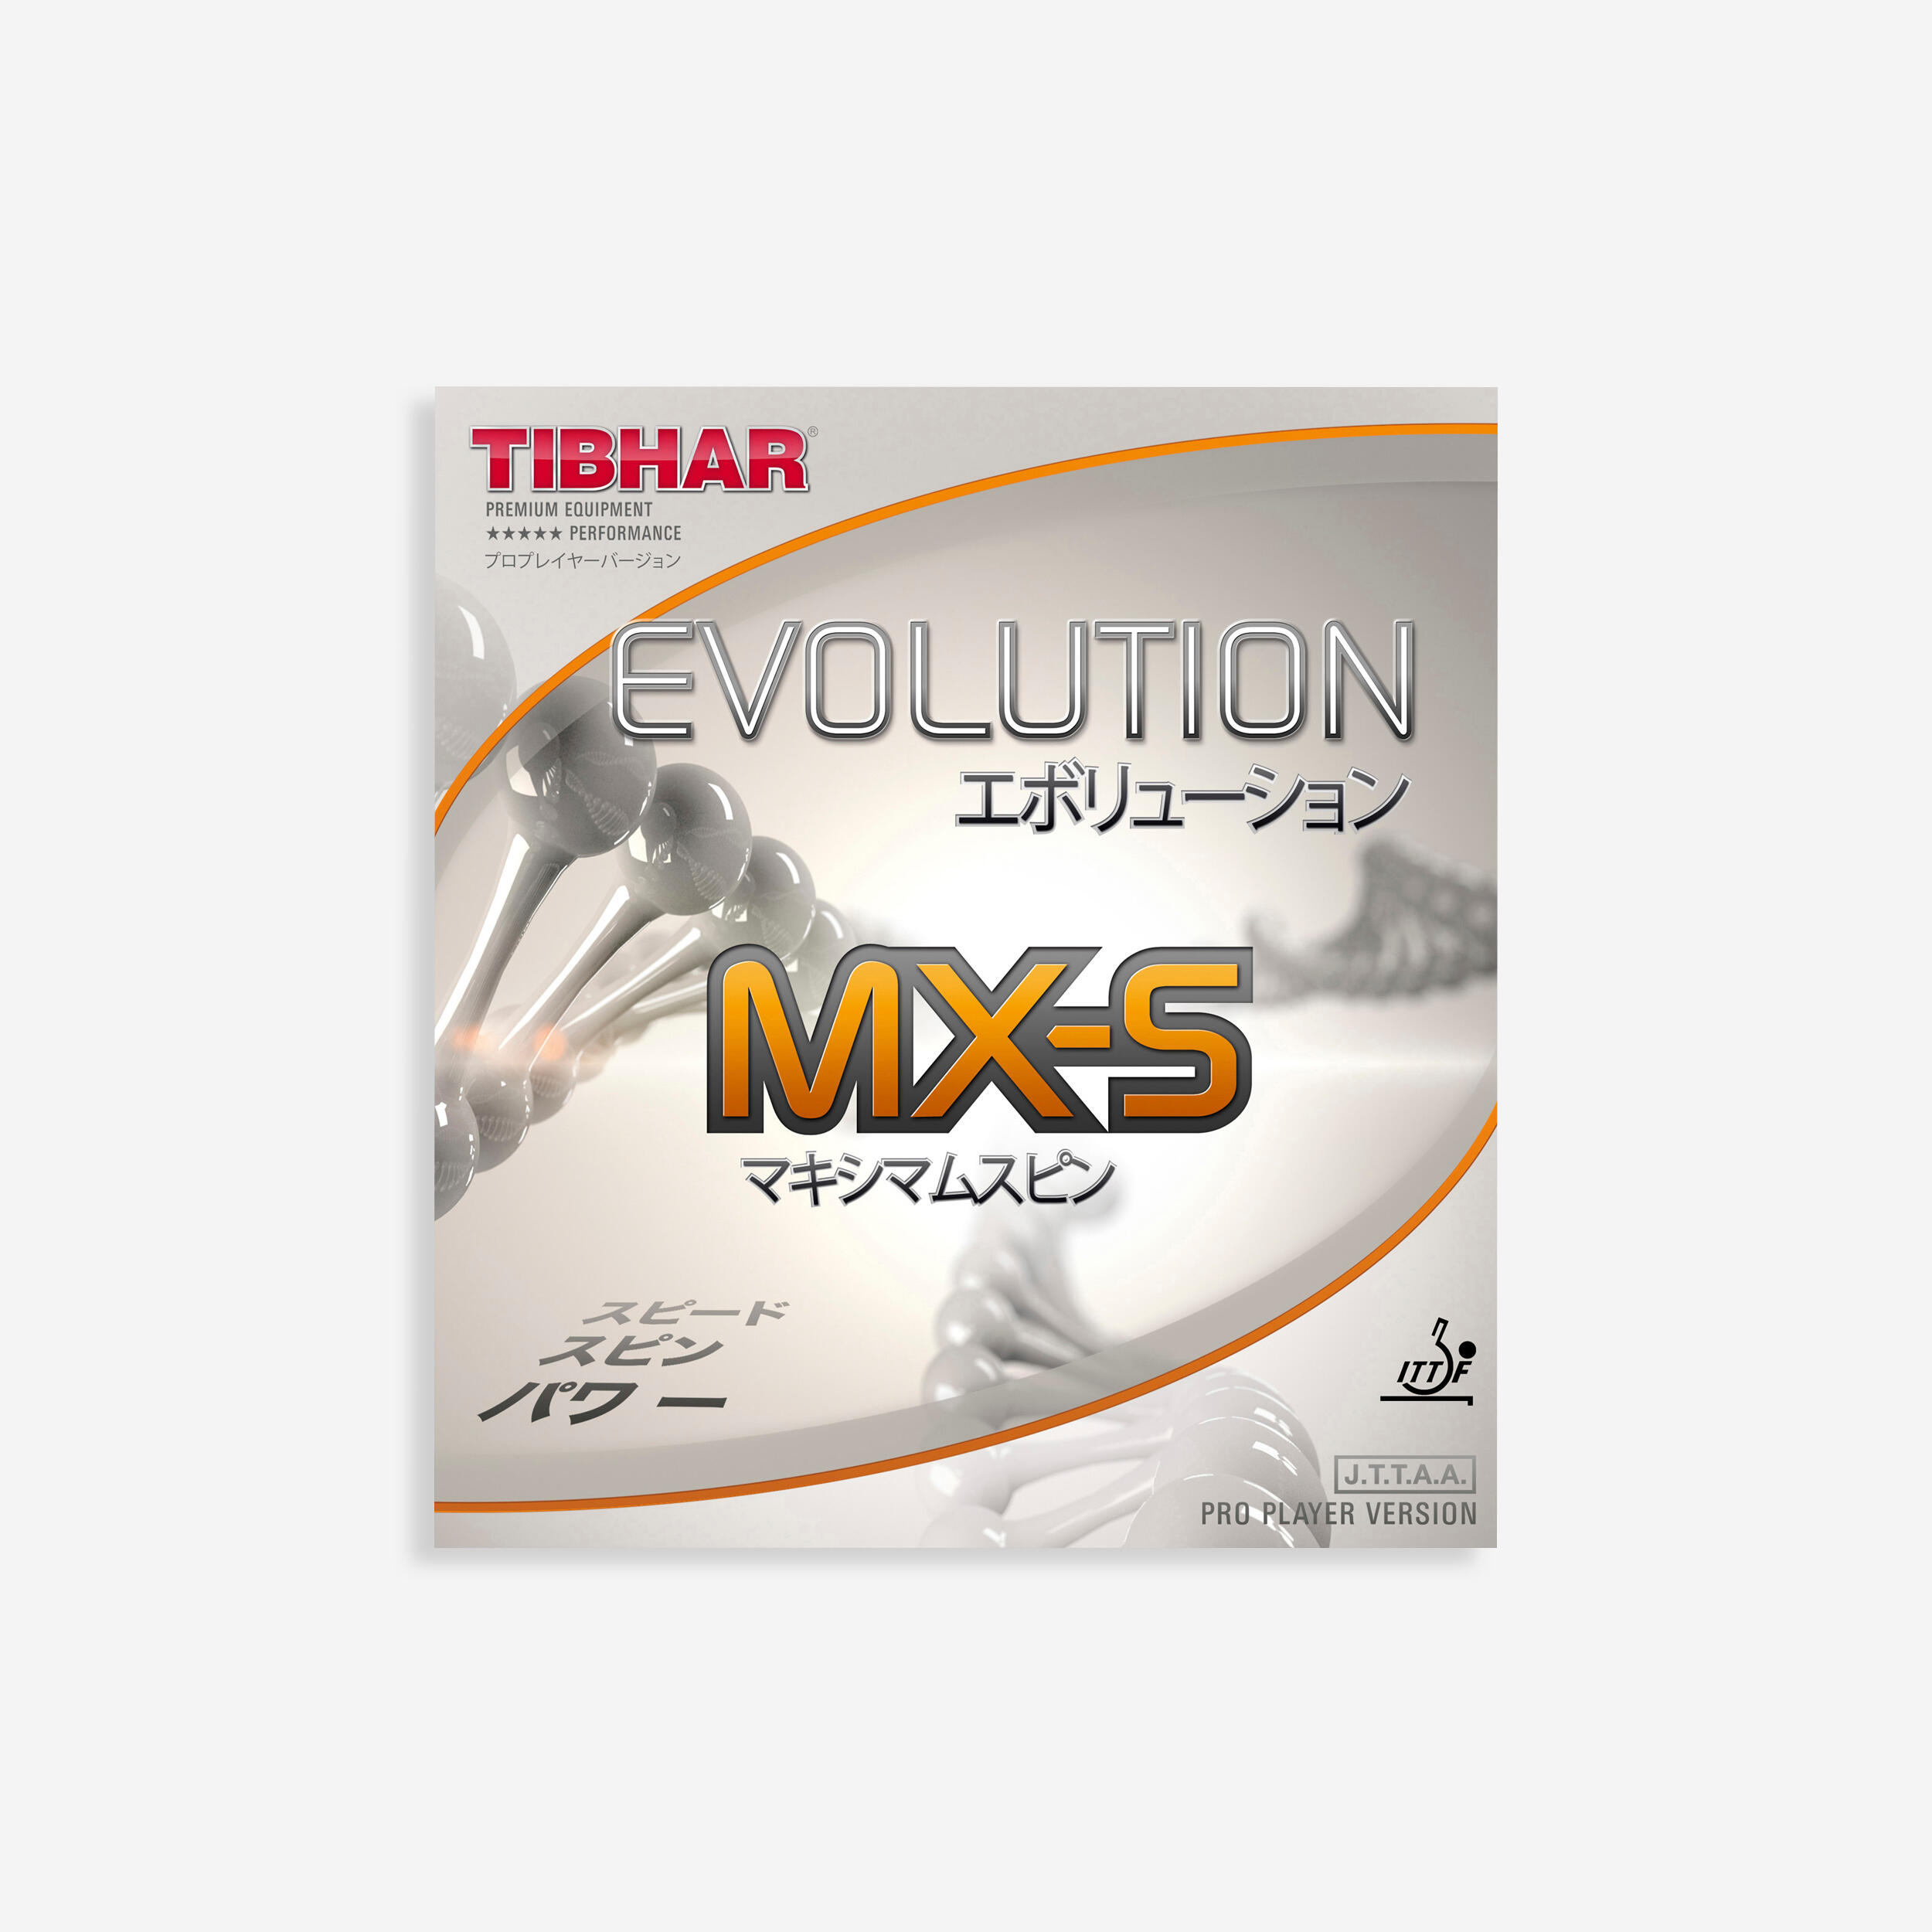 Față Paletă Tenis de masă Evolution MX-S TIBHAR decathlon.ro